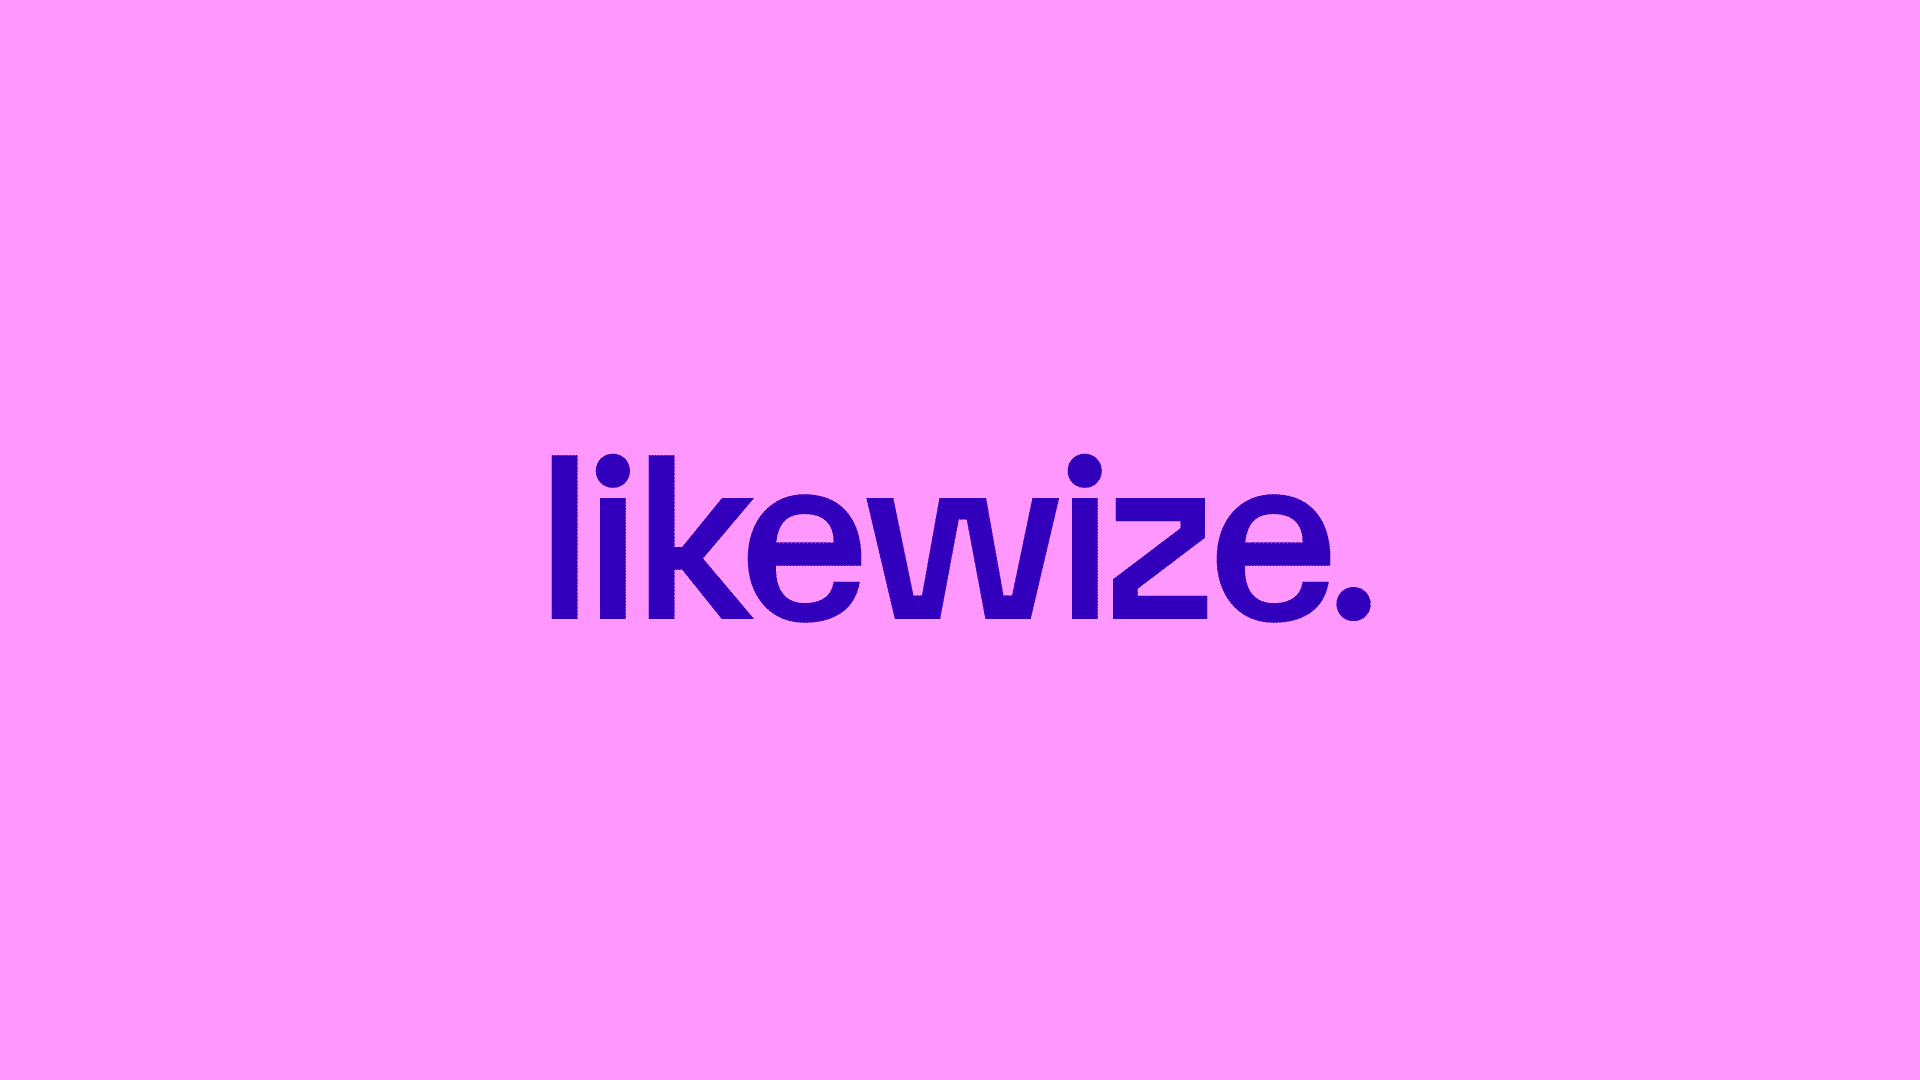 likewize_wp